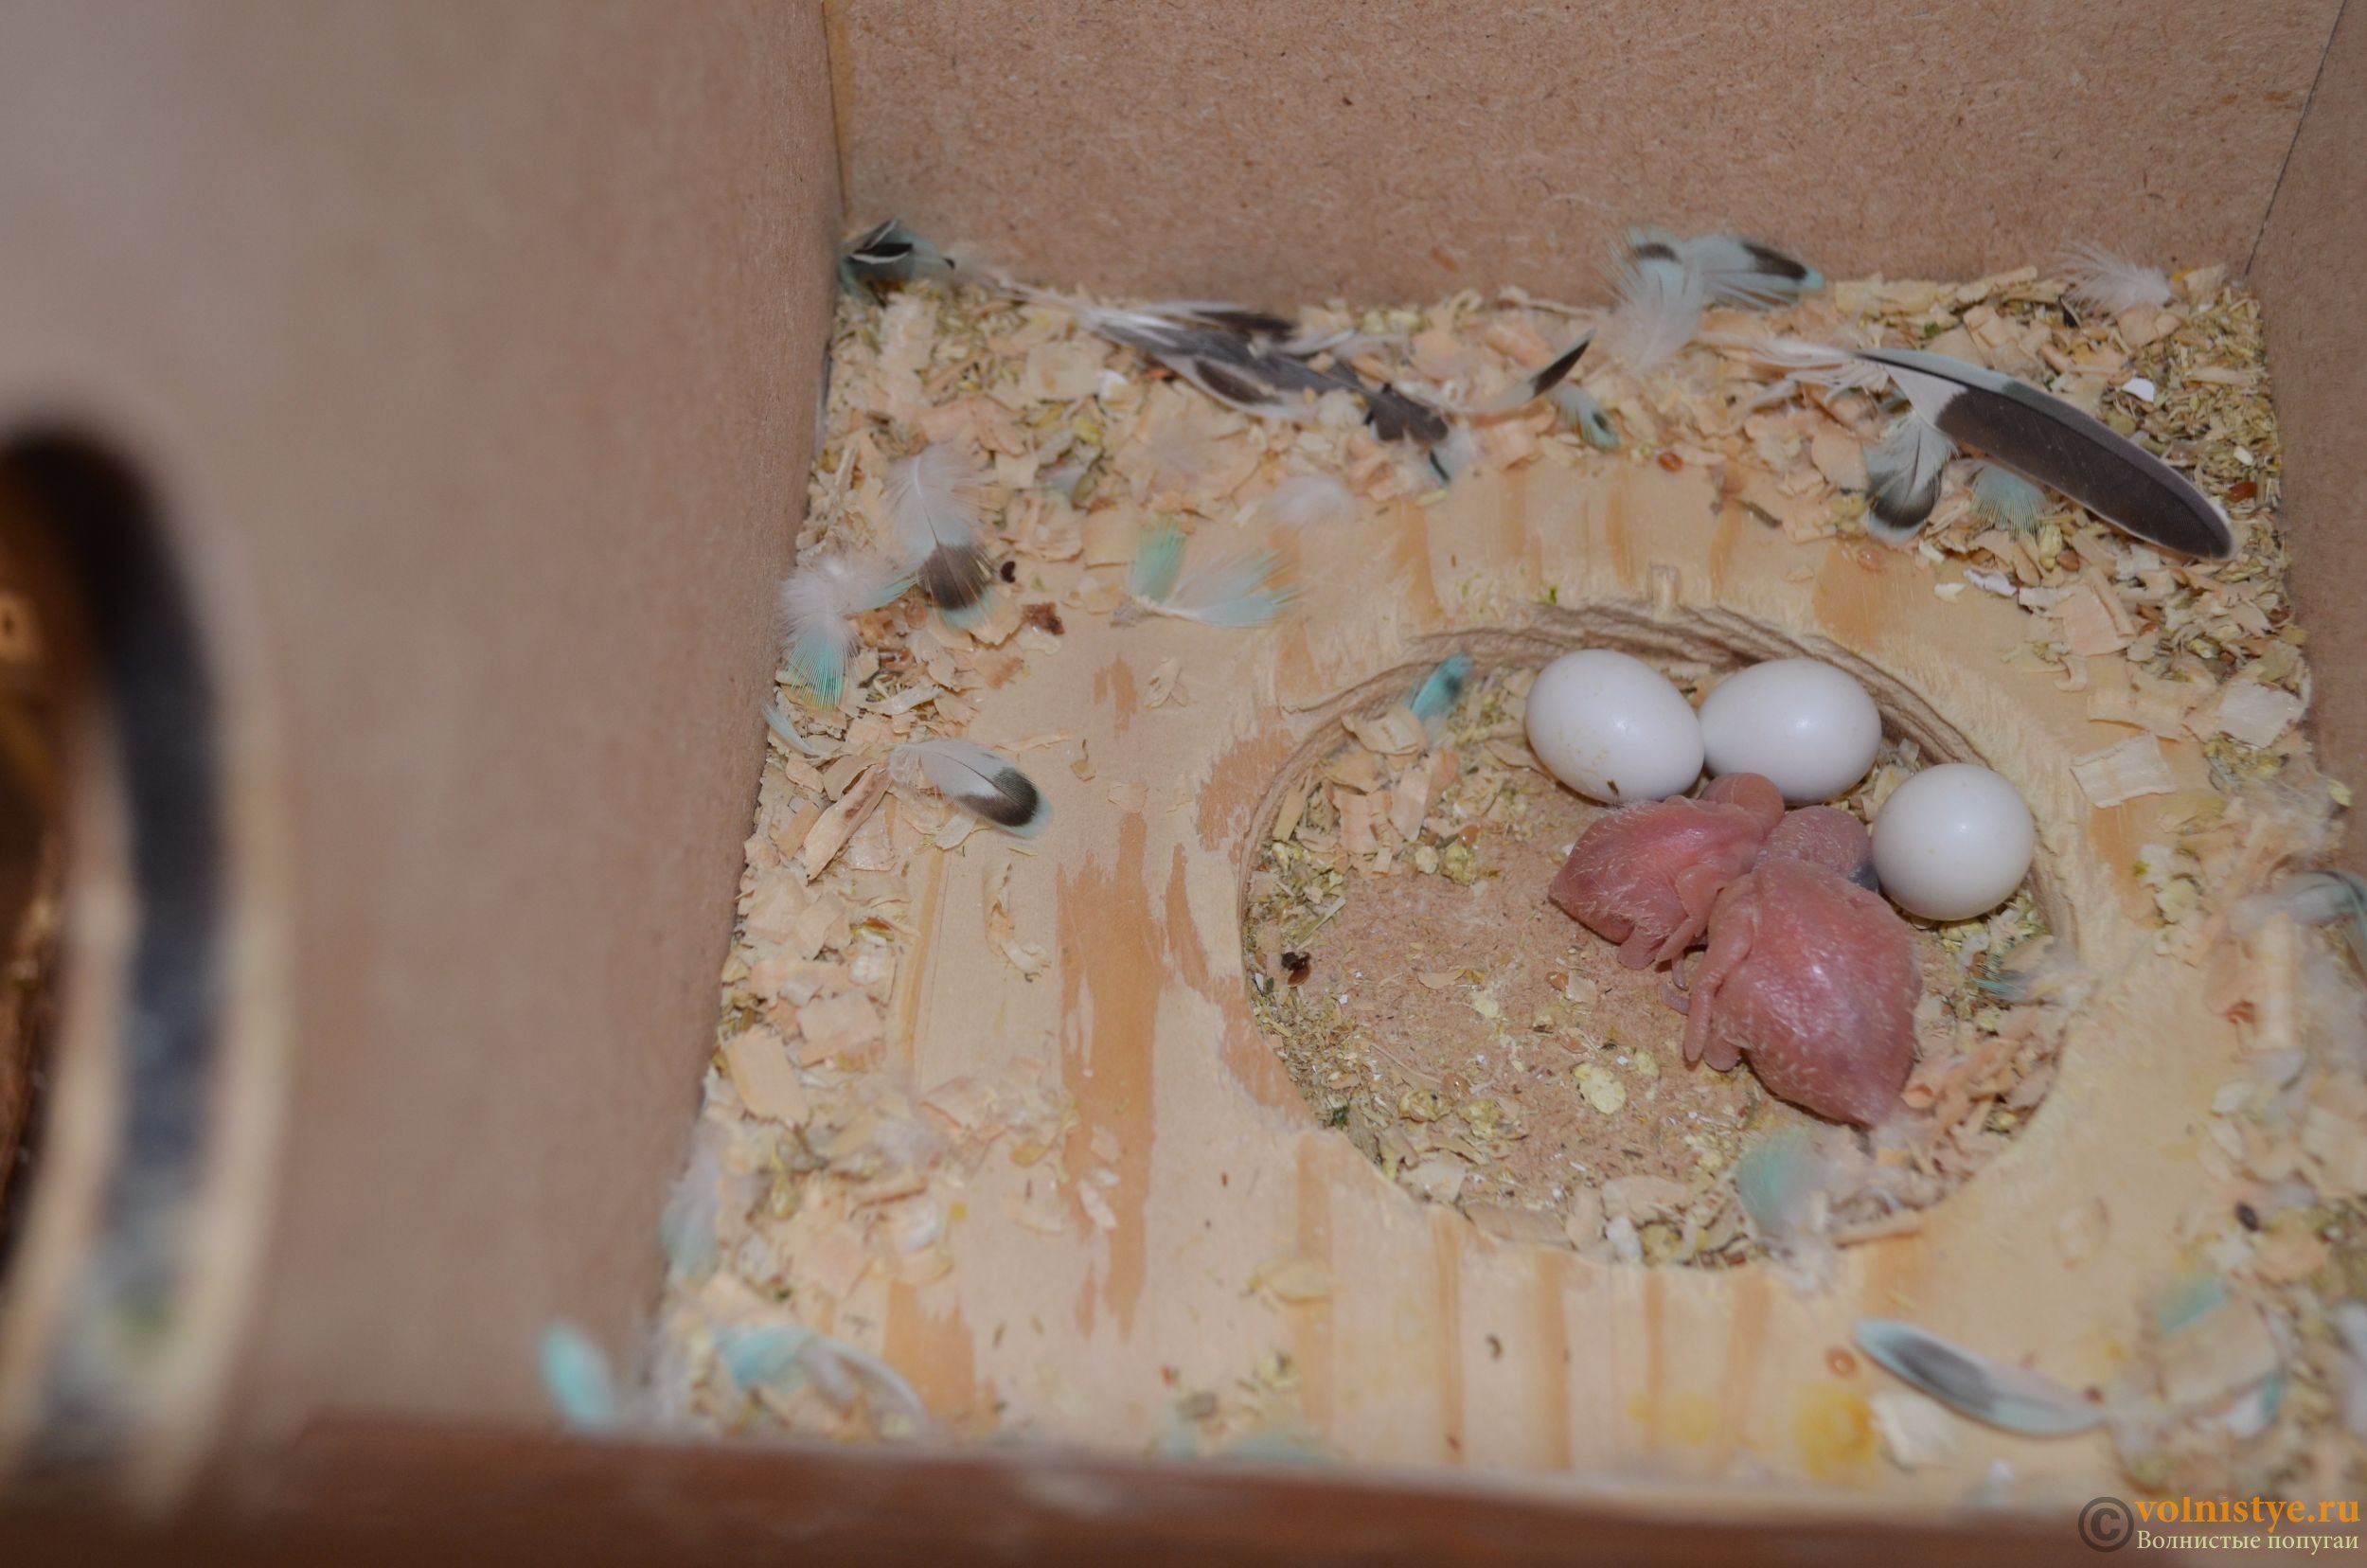 Гнездо для волнистых попугаев: всё про обустройство гнездового домика